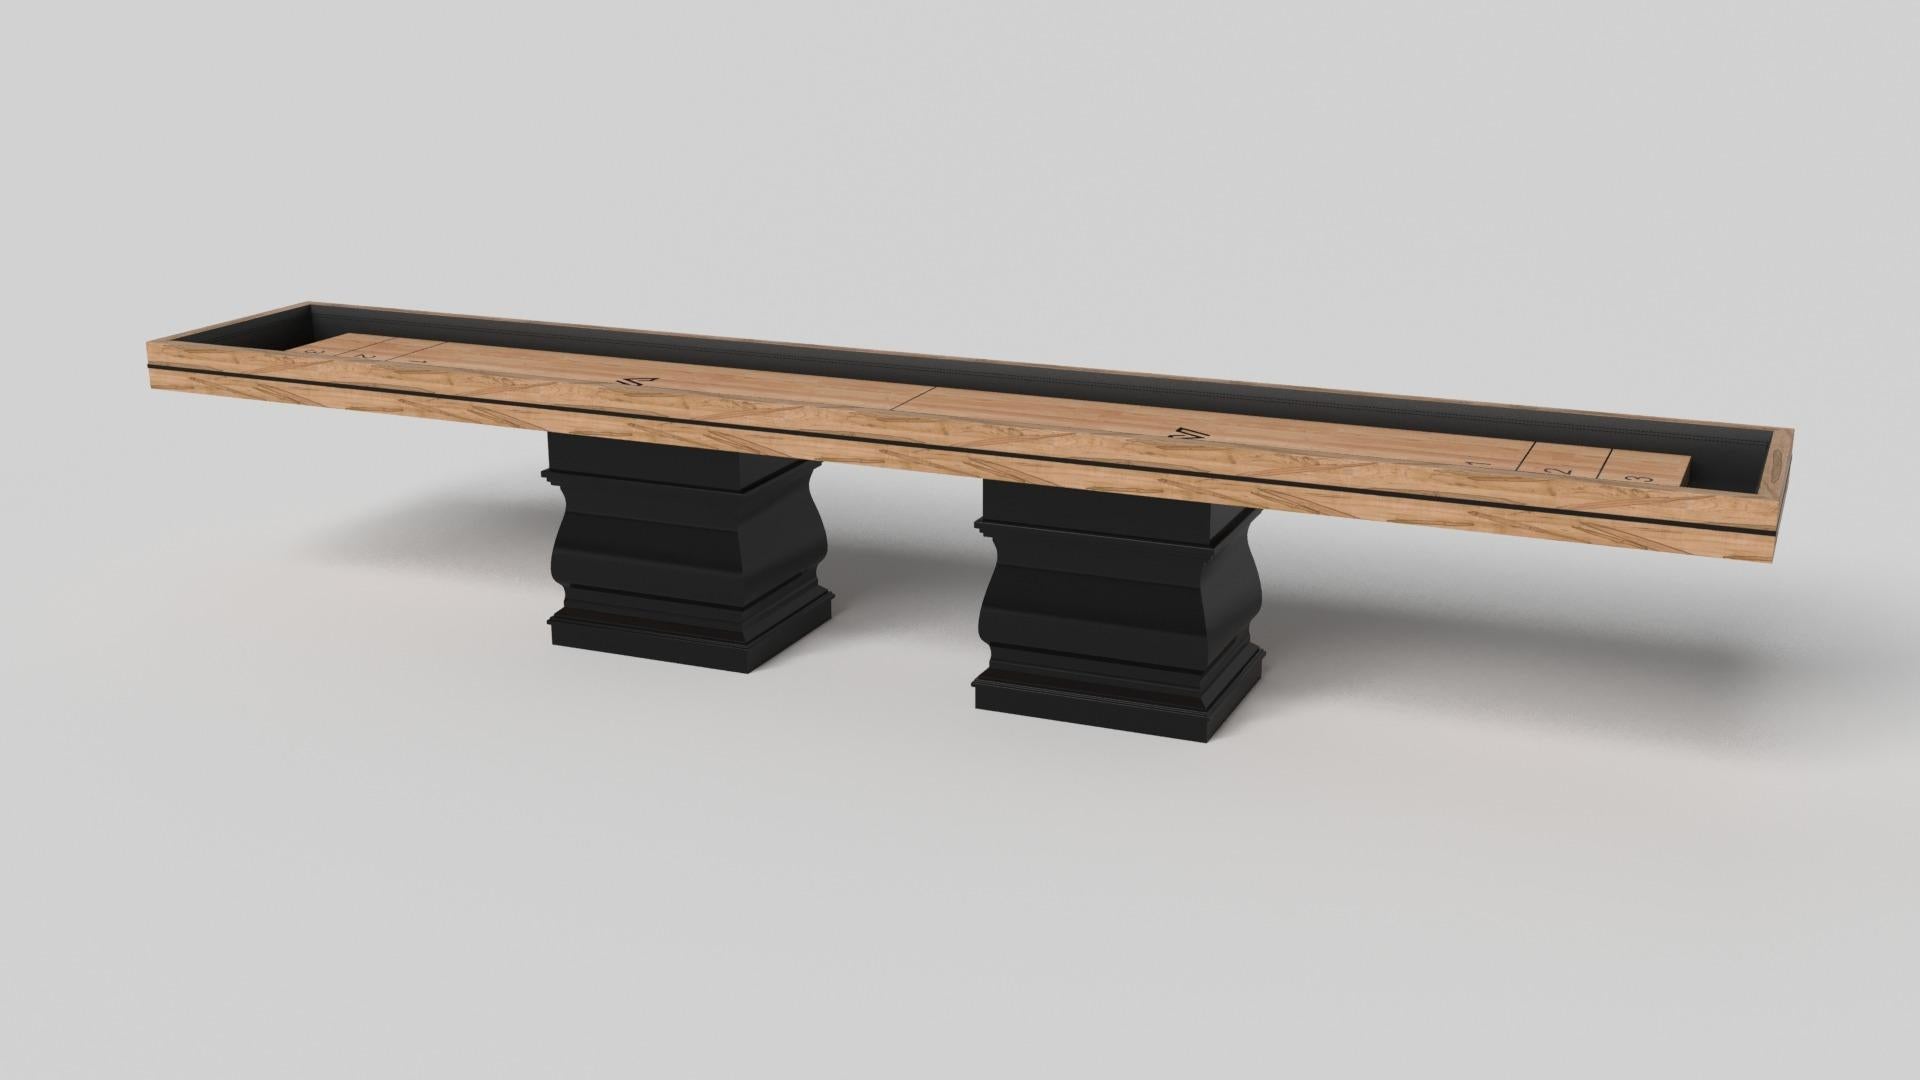 Zwei handgeformte Beine verleihen diesem handgefertigten Shuffleboard-Tisch in Weiß ein Gefühl von klassischem Stil. Dieser luxuriöse Holztisch hat eine glatte, rechteckige Platte, die auf zwei breiten Balustersäulen ruht, die die Kurven und Linien